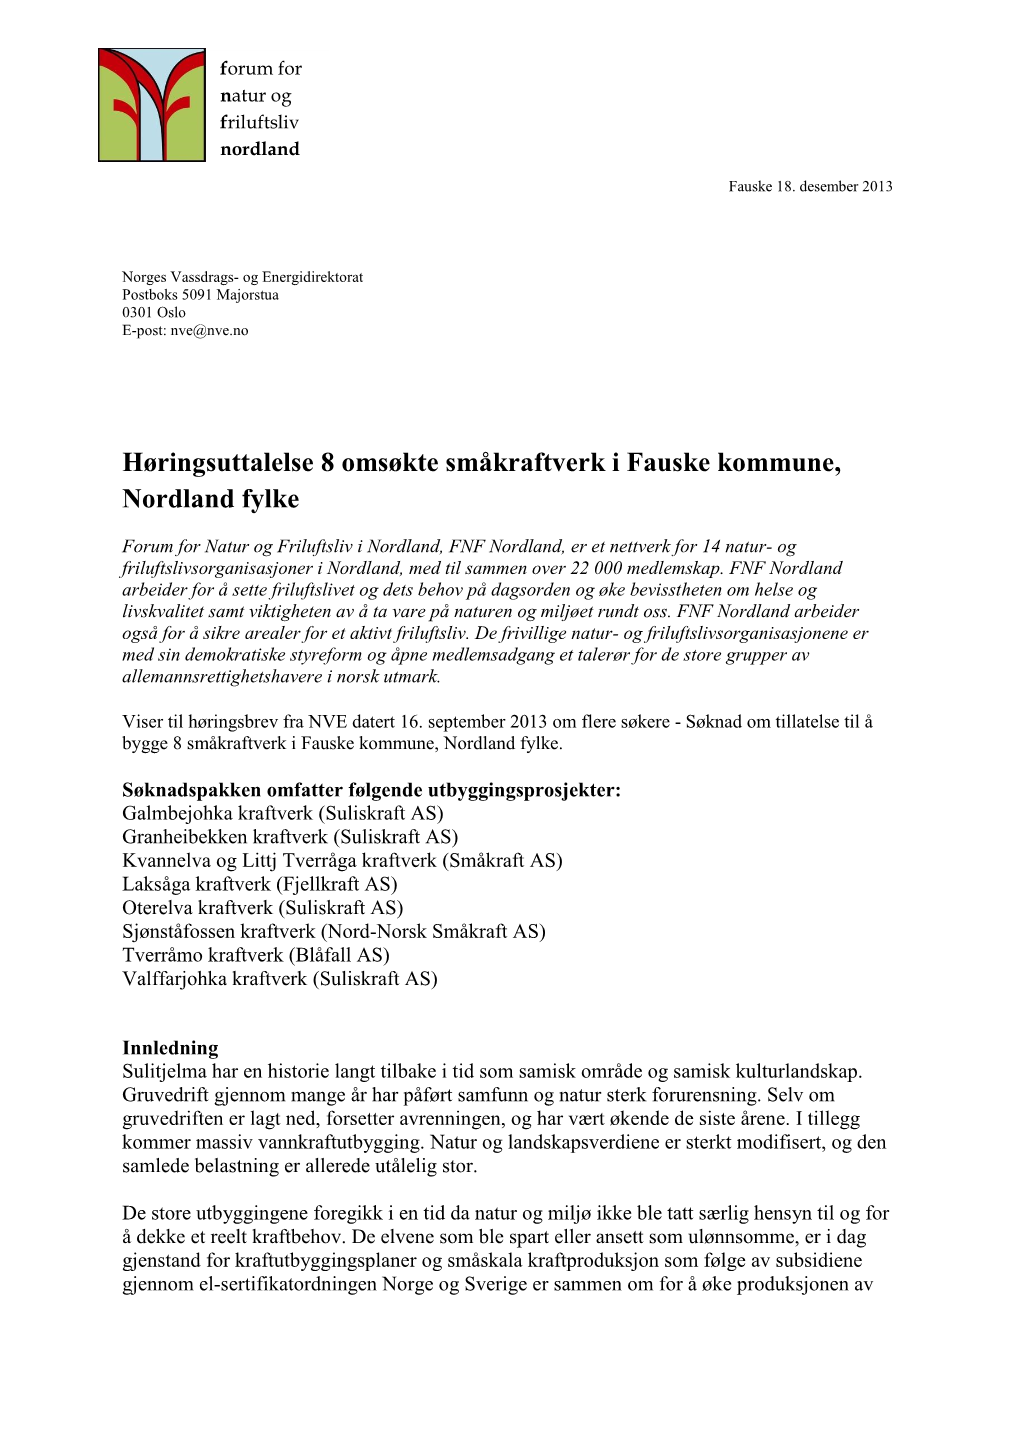 Høringsuttalelse 8 Omsøkte Småkraftverk I Fauske Kommune, Nordland Fylke